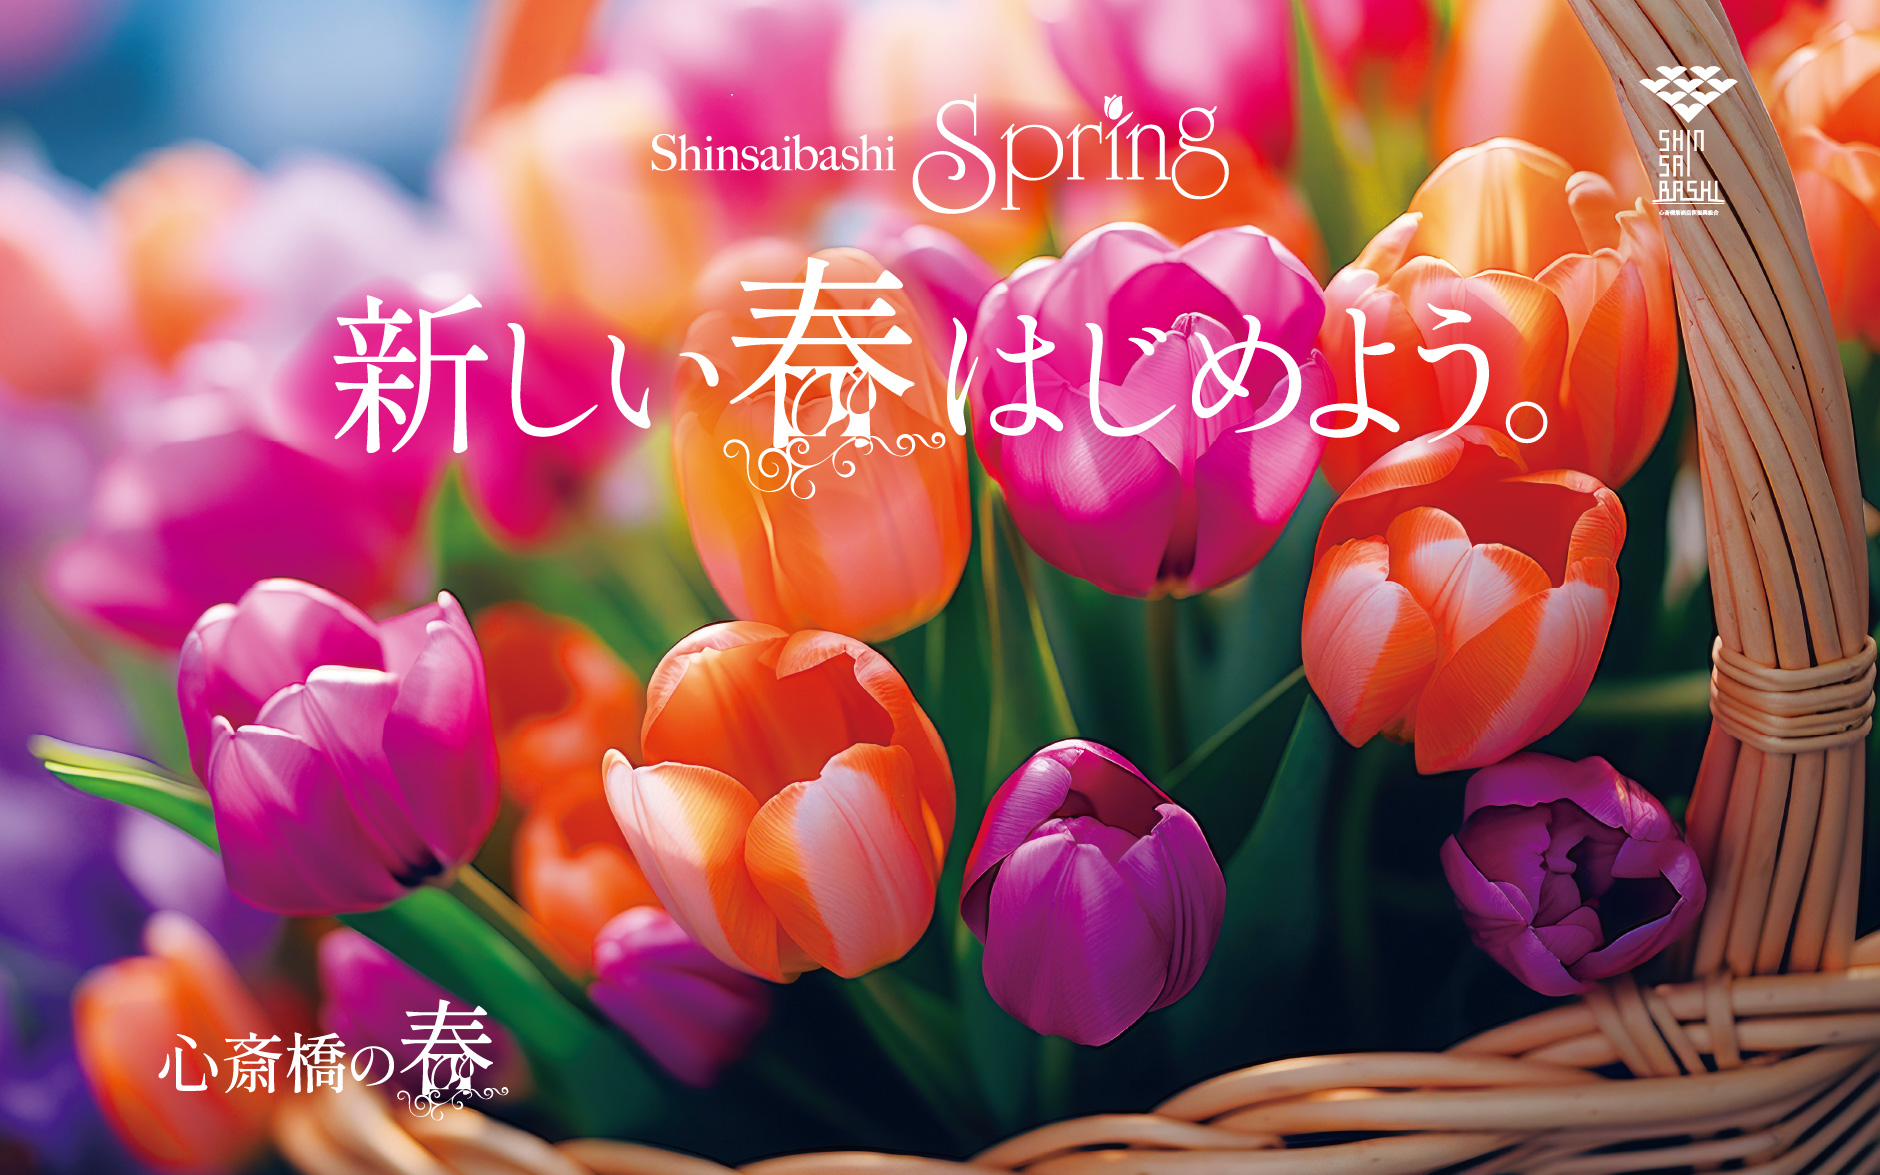 shinsaibashi spring 新しい春 始めよう